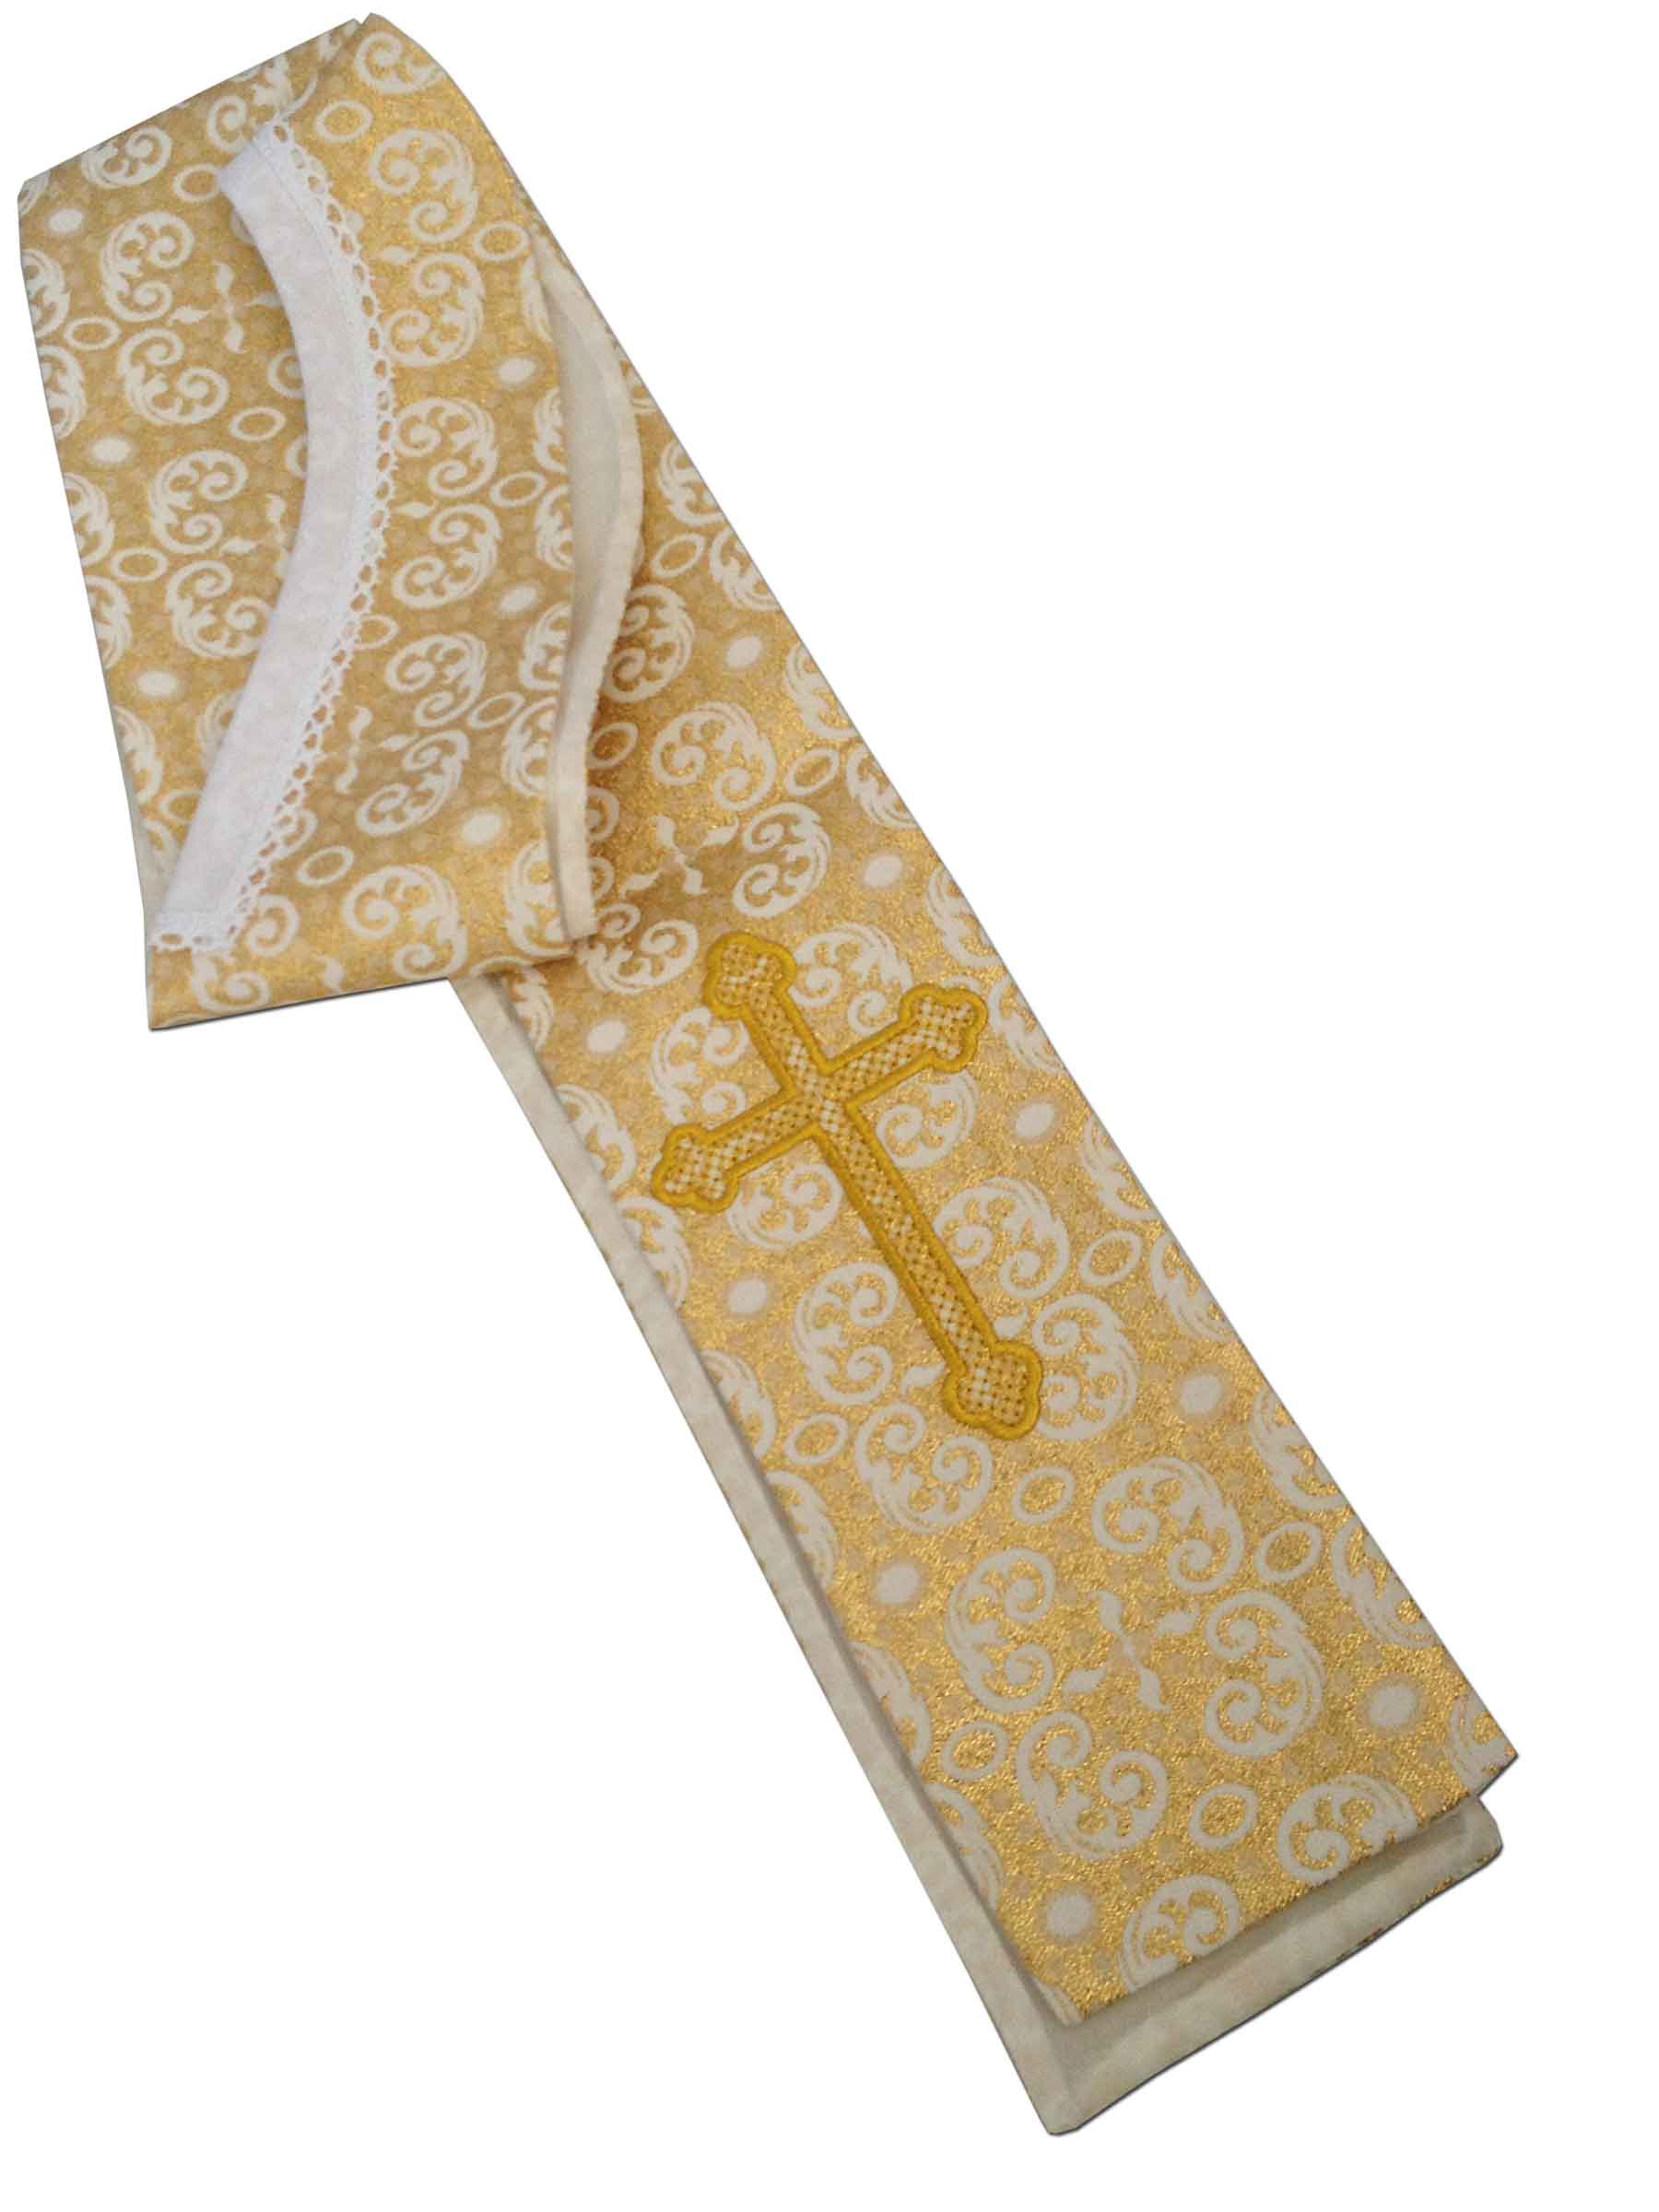 Estola sacerdotal brocada Estola litúrgica brocado oro